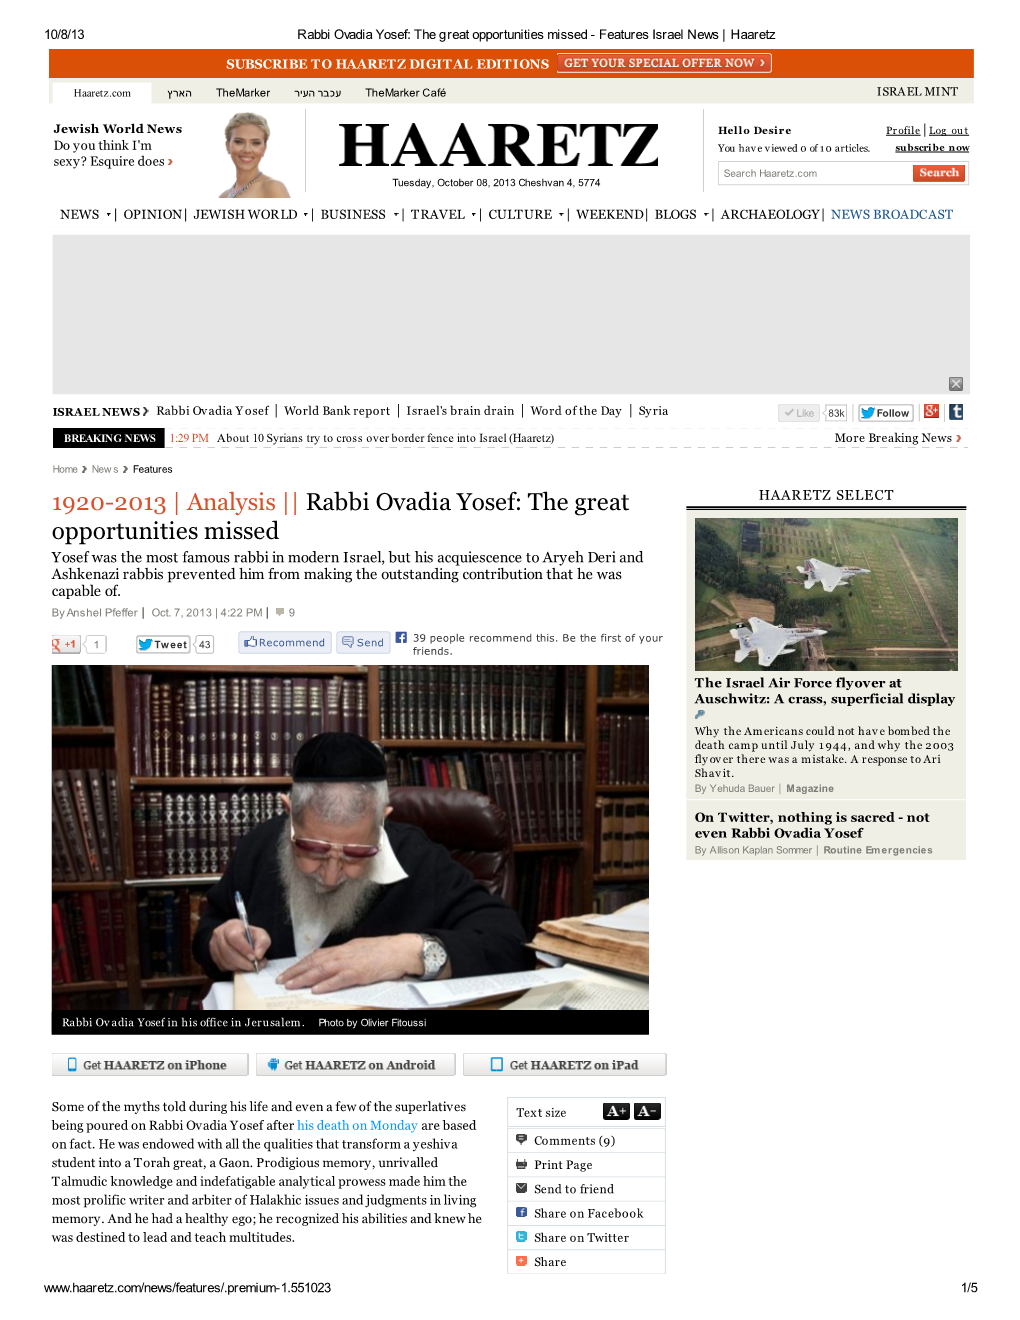 Rabbi Ovadia Yosef: the Great Opportunities Missed - Features Israel News | Haaretz